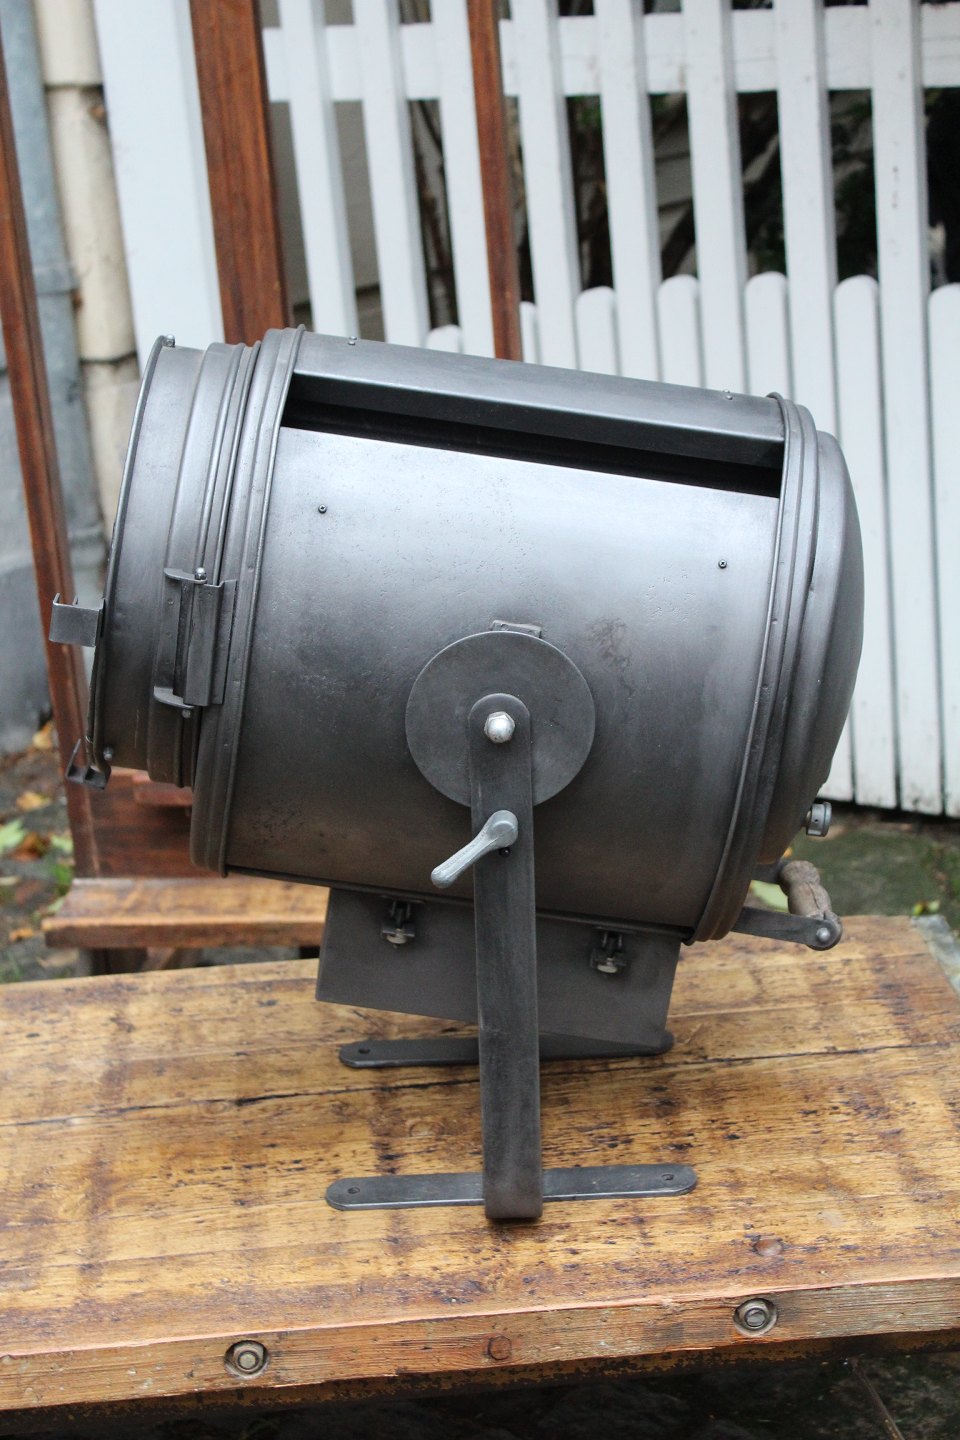 Sotz Barrel Stove Kit